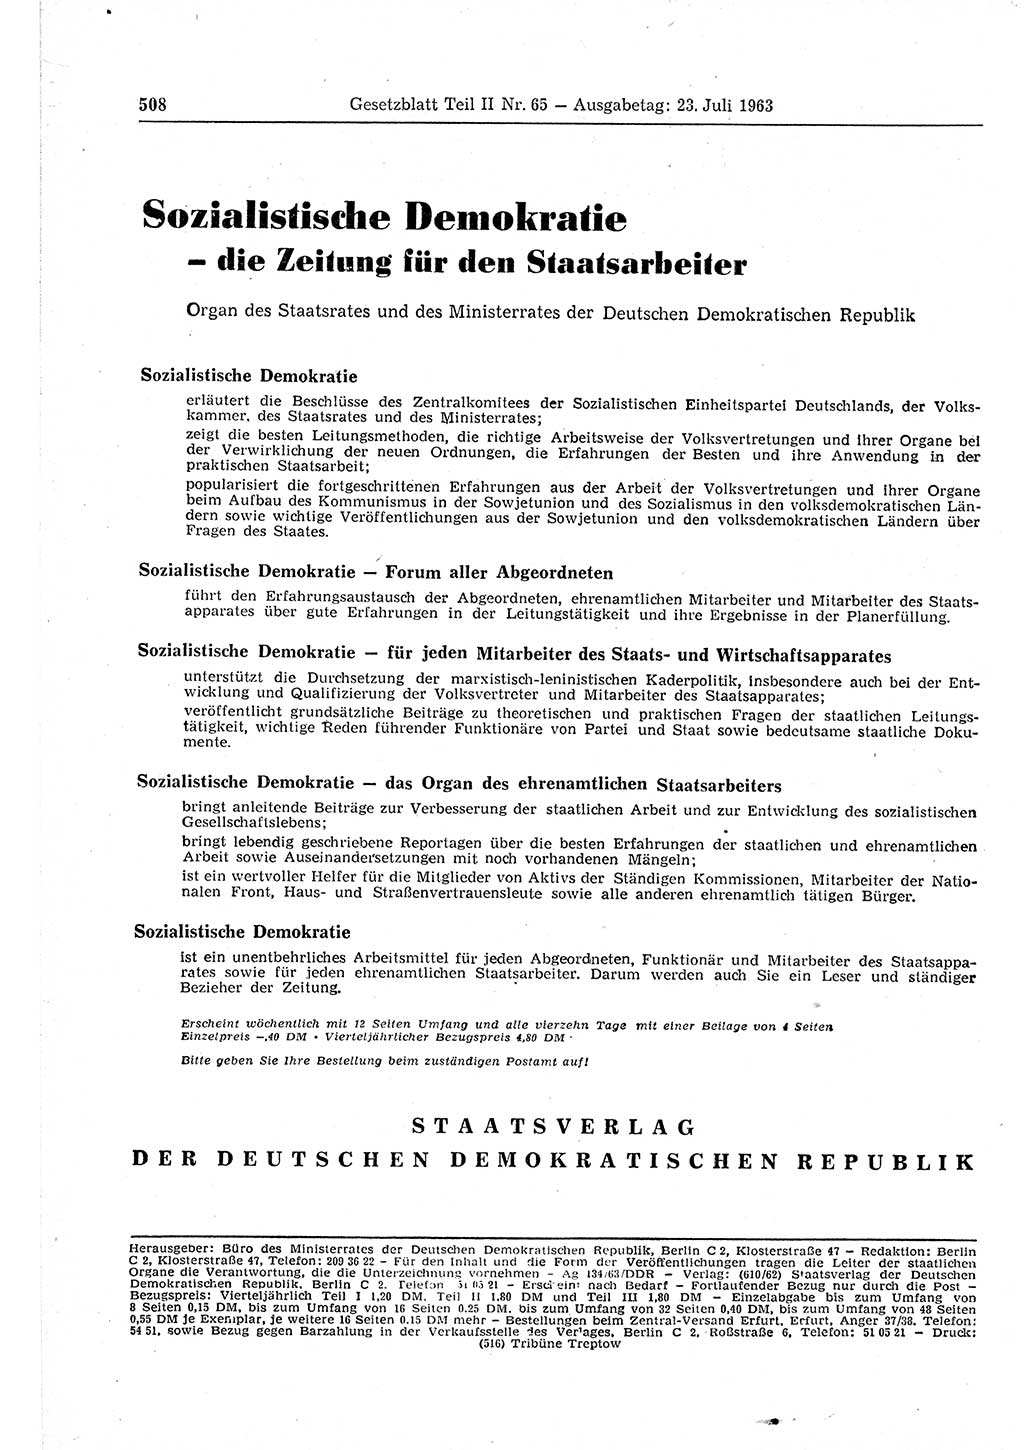 Gesetzblatt (GBl.) der Deutschen Demokratischen Republik (DDR) Teil ⅠⅠ 1963, Seite 508 (GBl. DDR ⅠⅠ 1963, S. 508)